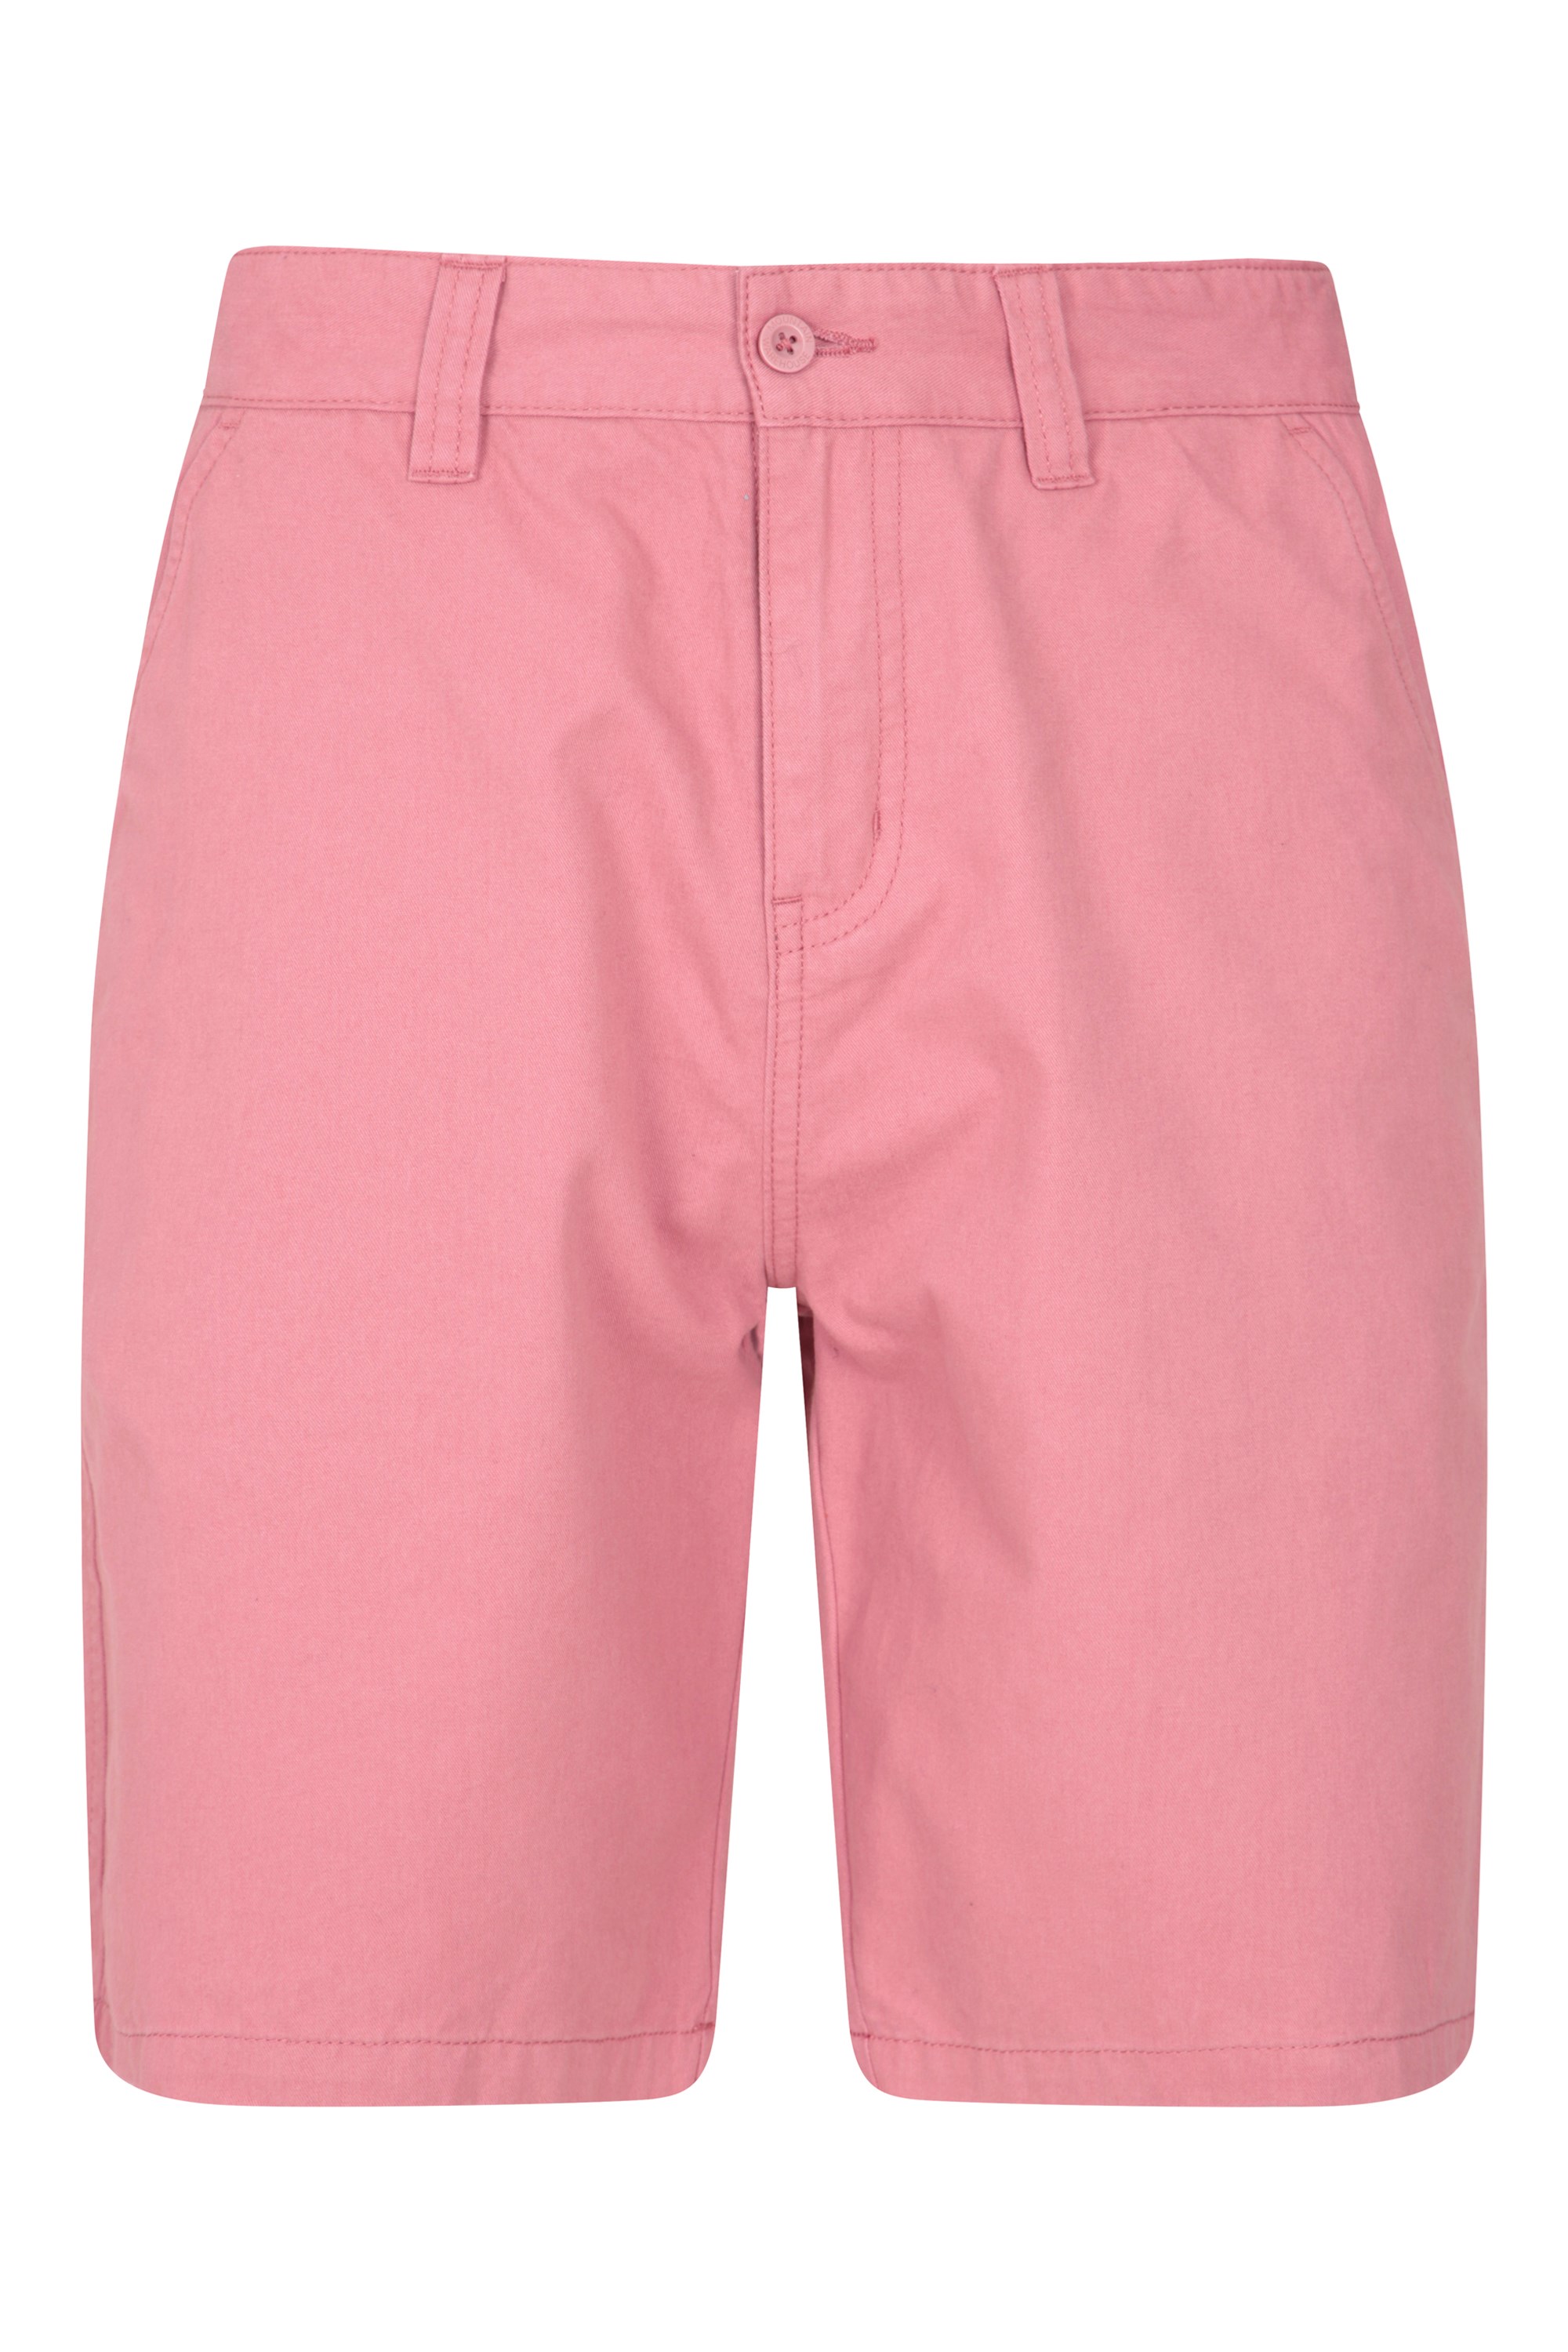 Take A Break Mens Shorts - Pink